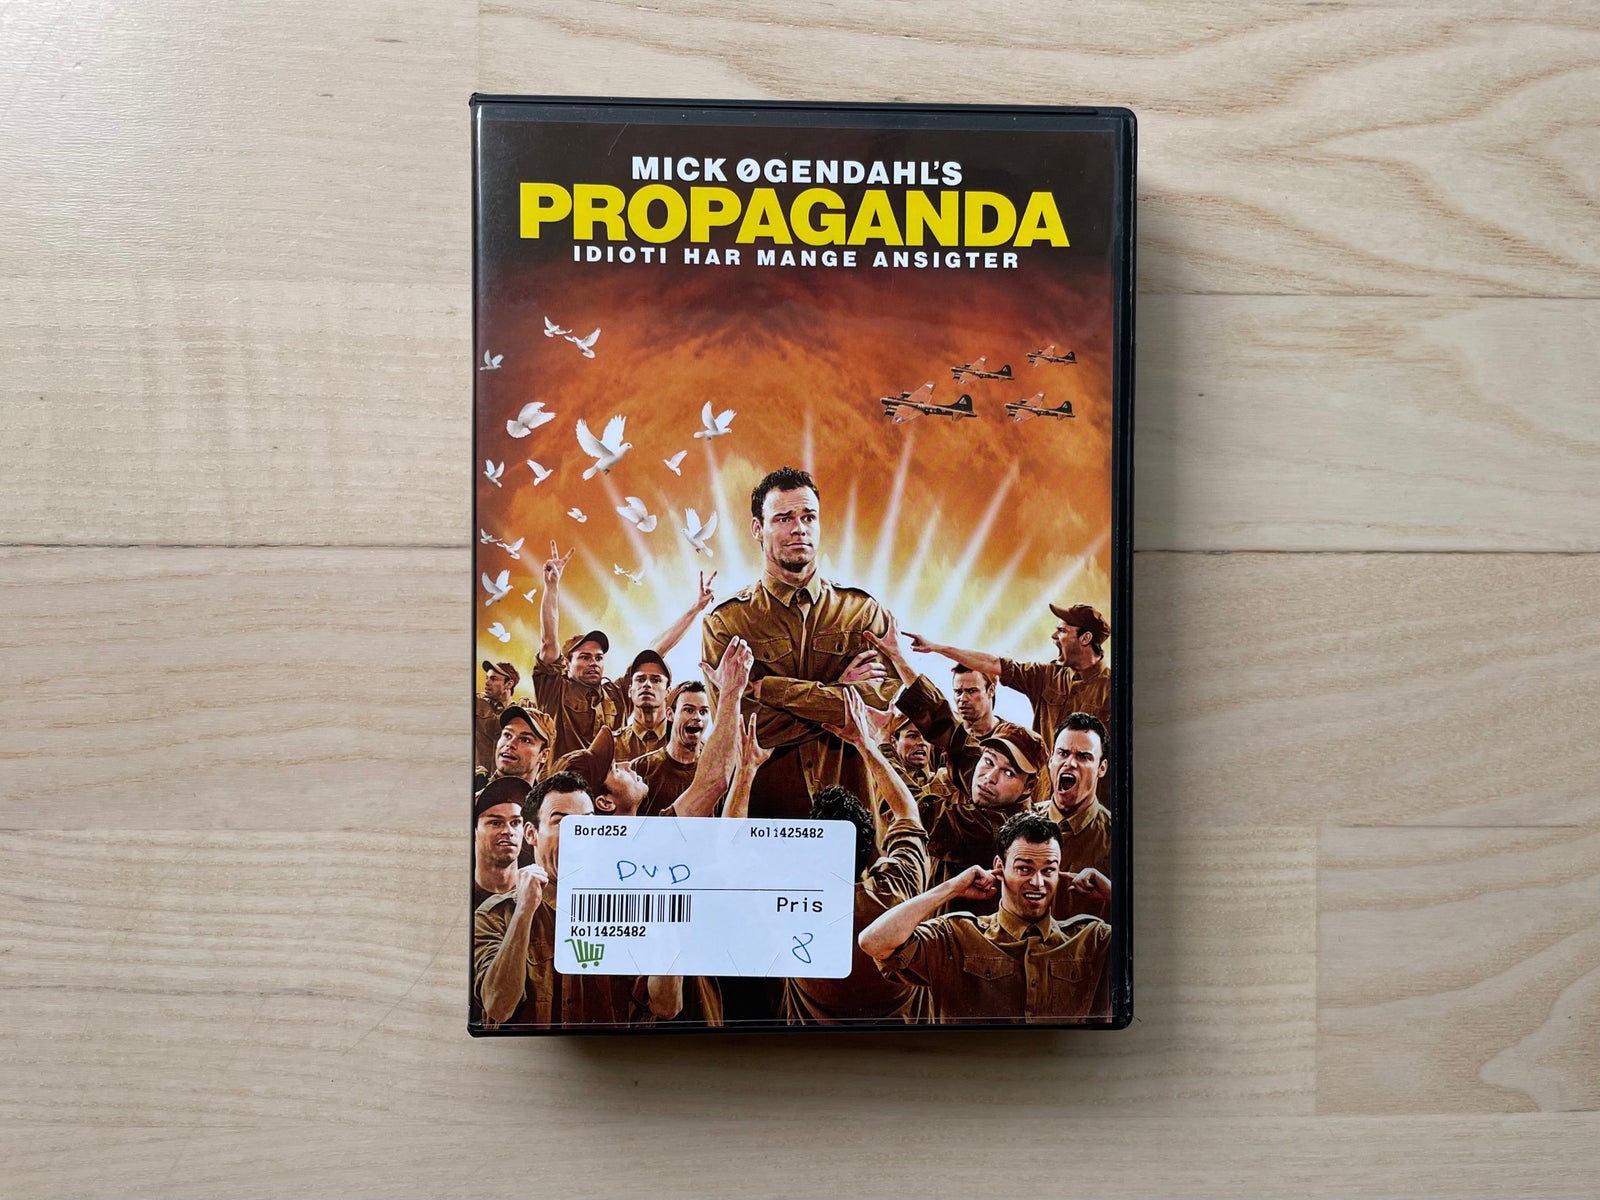 basen jøde køleskab Propaganda, instruktør Mick Øgendahl, DVD – dba.dk – Køb og Salg af Nyt og  Brugt